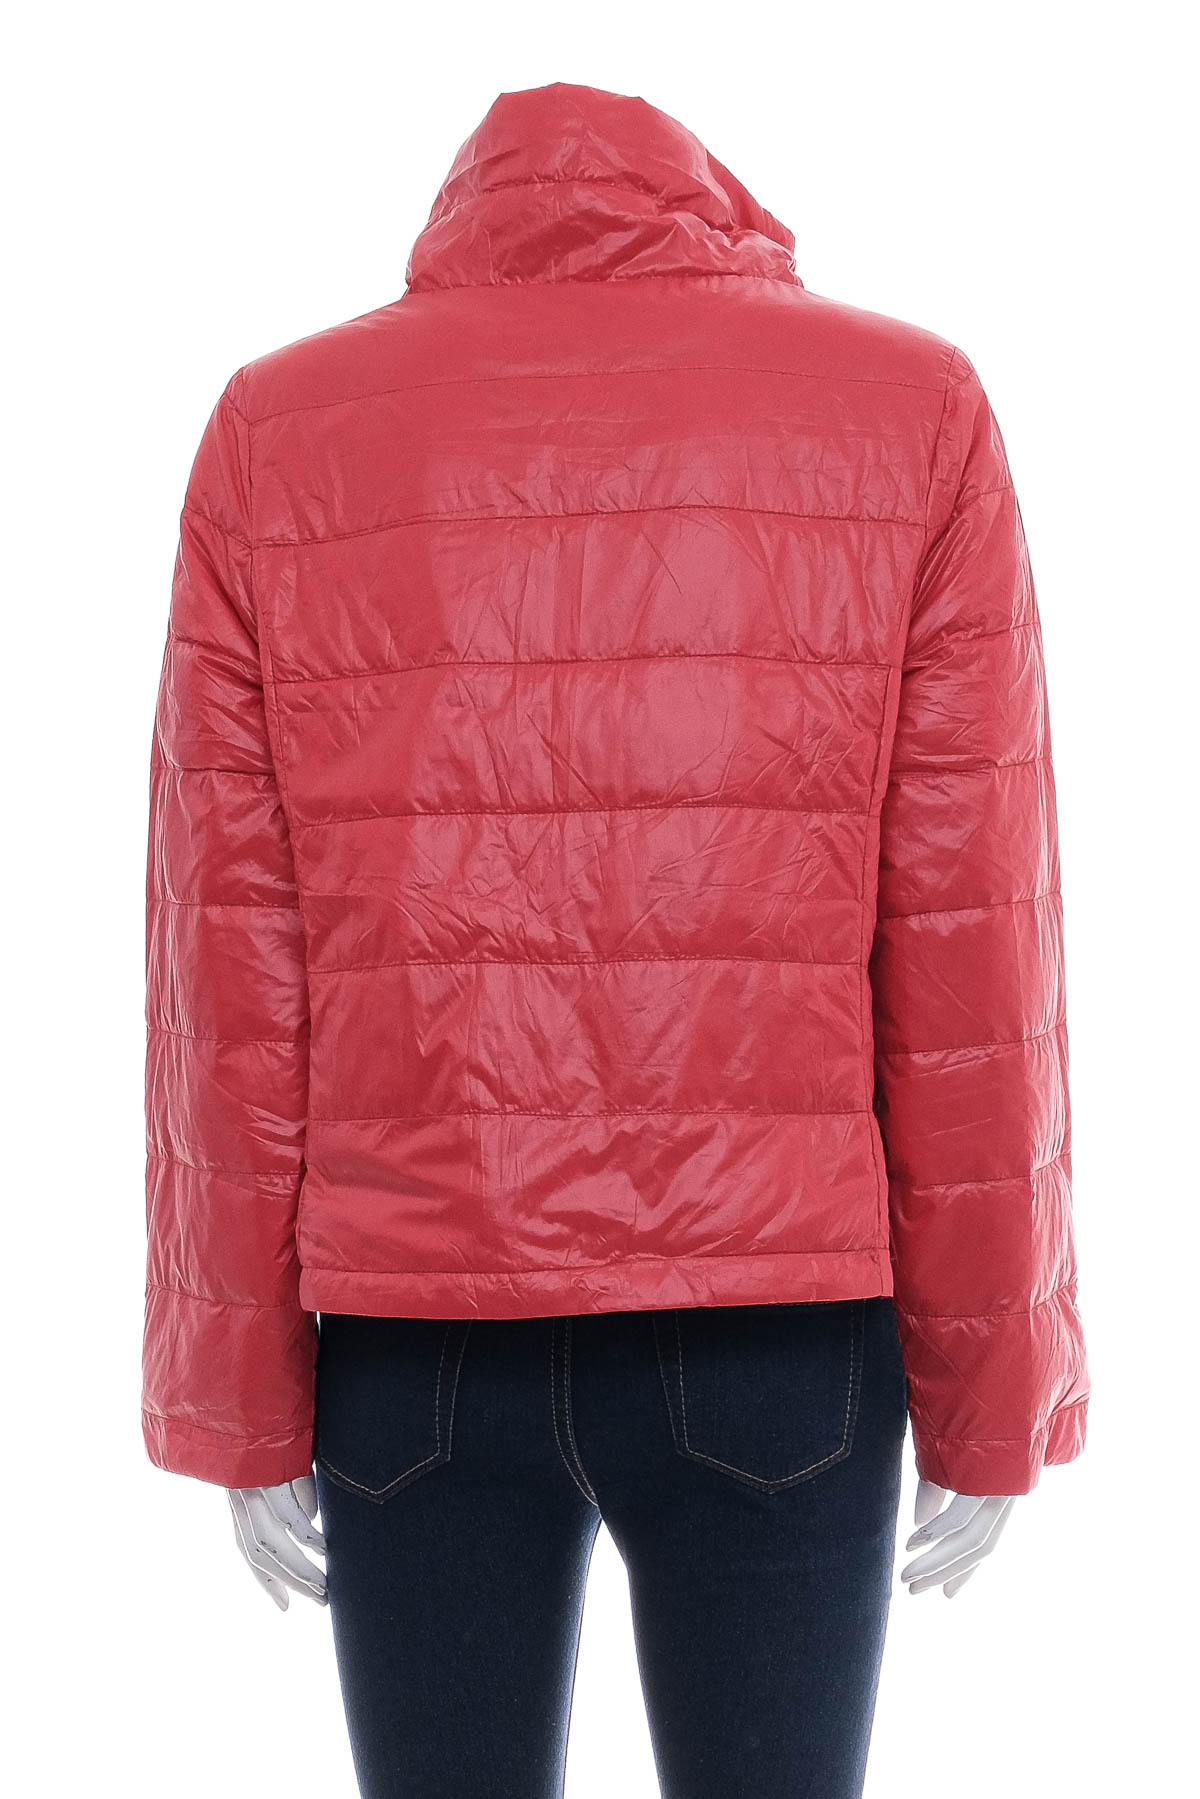 Female jacket - 1